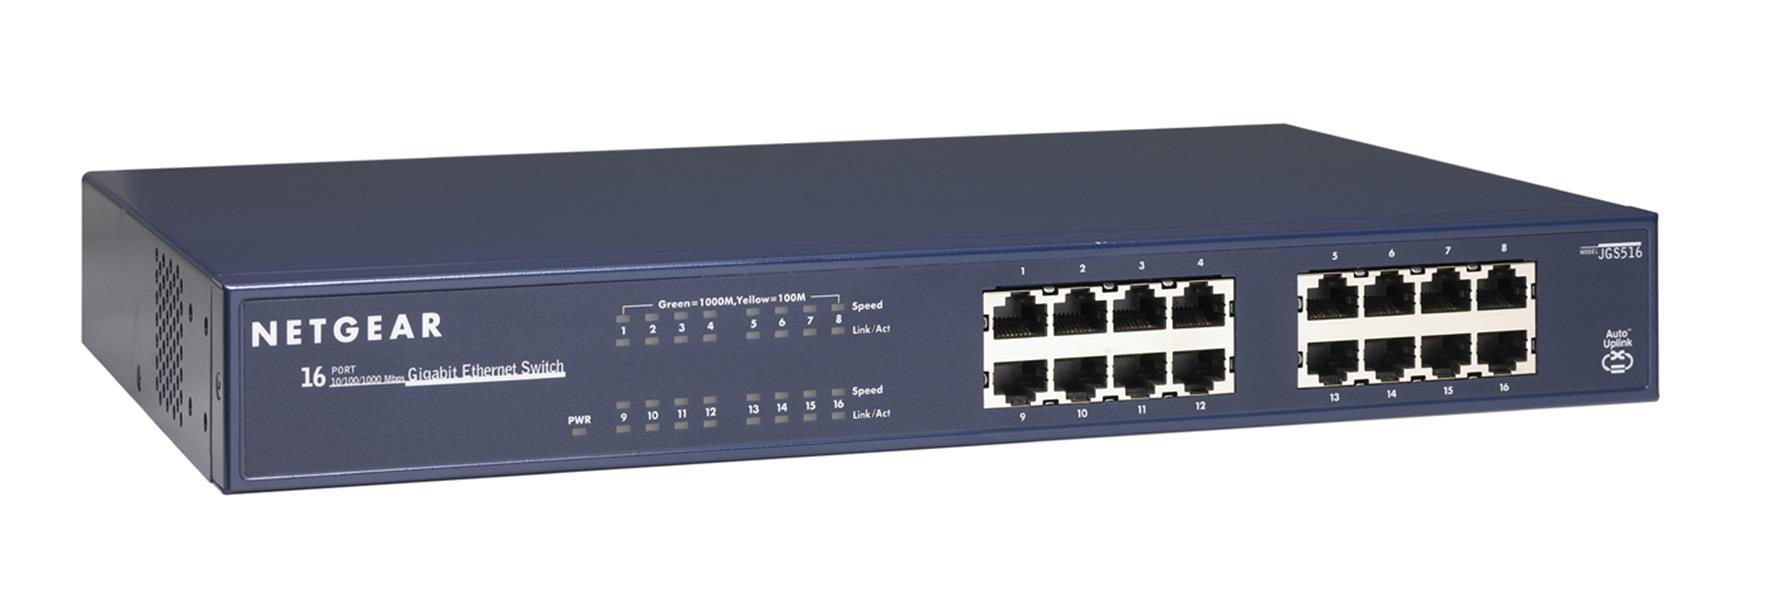 Netgear ProSAFE Unmanaged Switch - JGS516 - 16 Gigabit Ethernet poorten 10/100/1000 Mbps